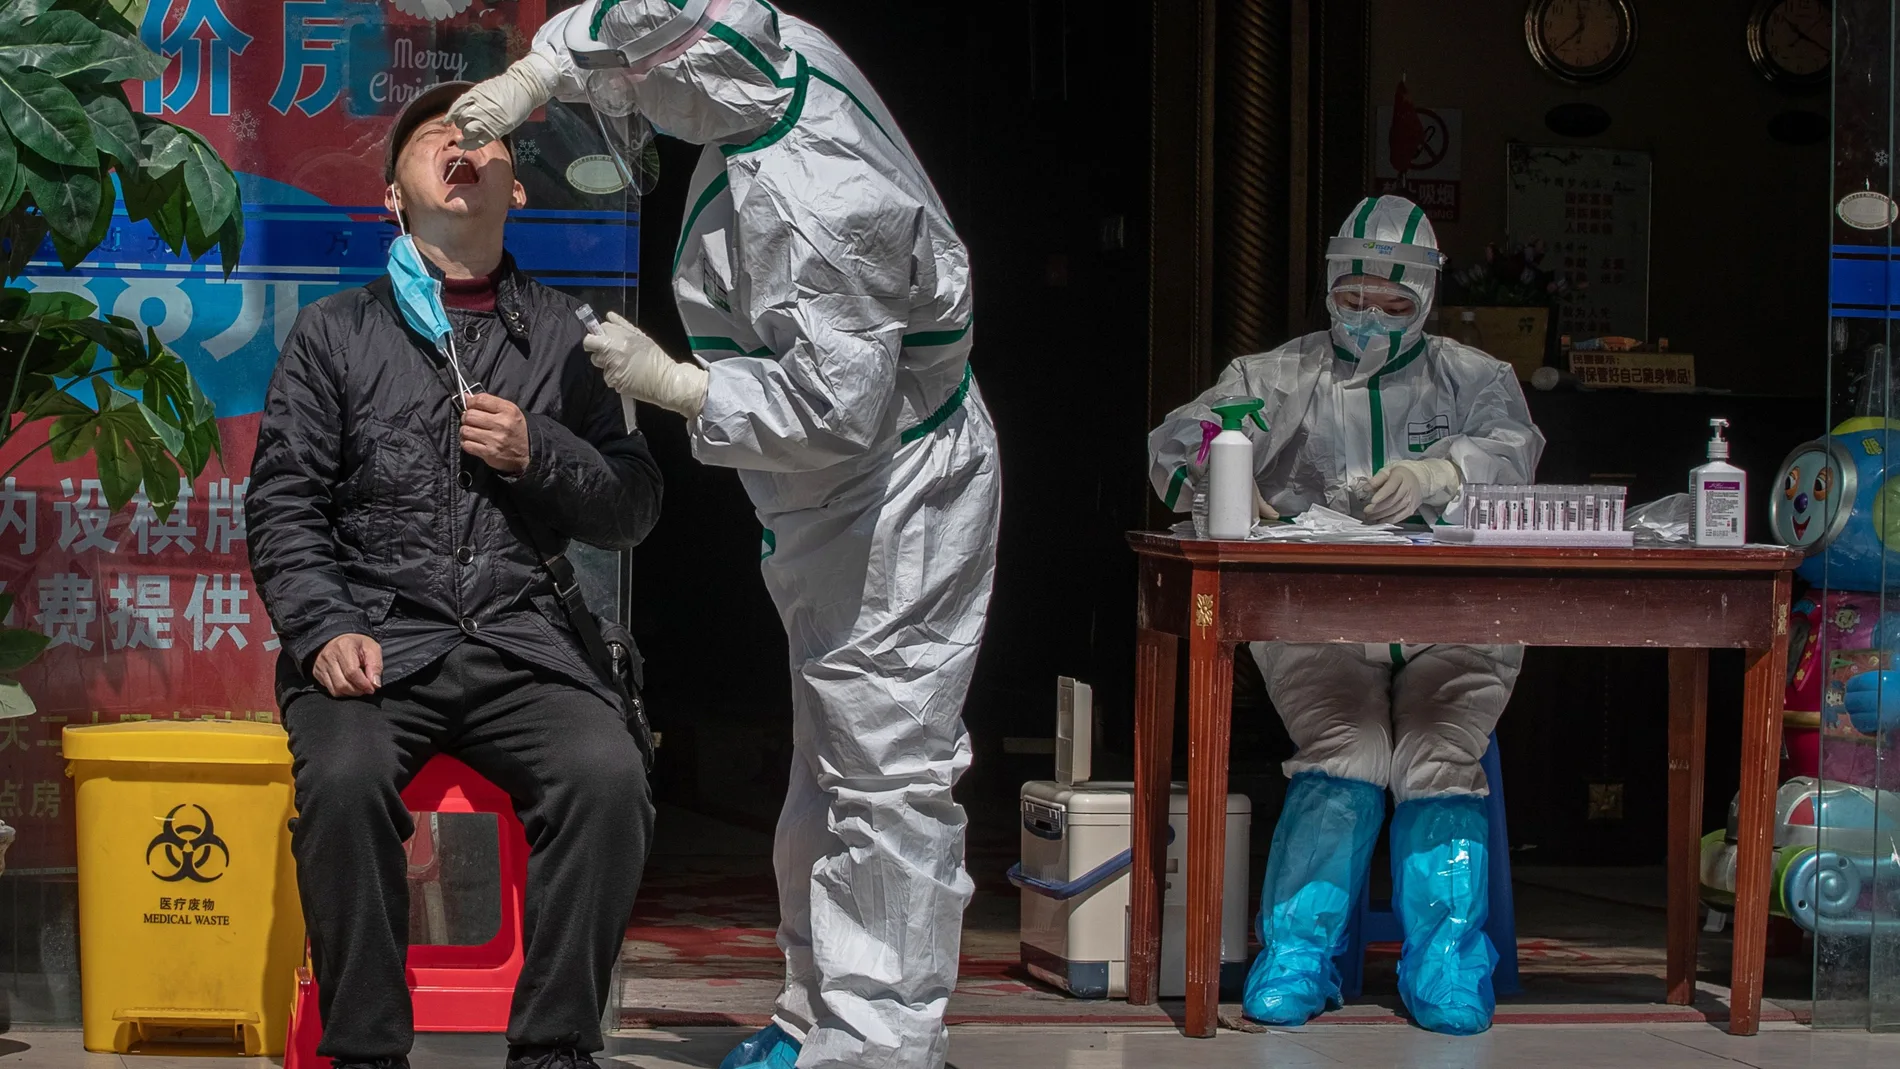 Un trabajador médico con equipo de protección completo realiza una prueba a un hombre para detectar síntomas de Covid-19 en una calle de Wuhan, China/EFE